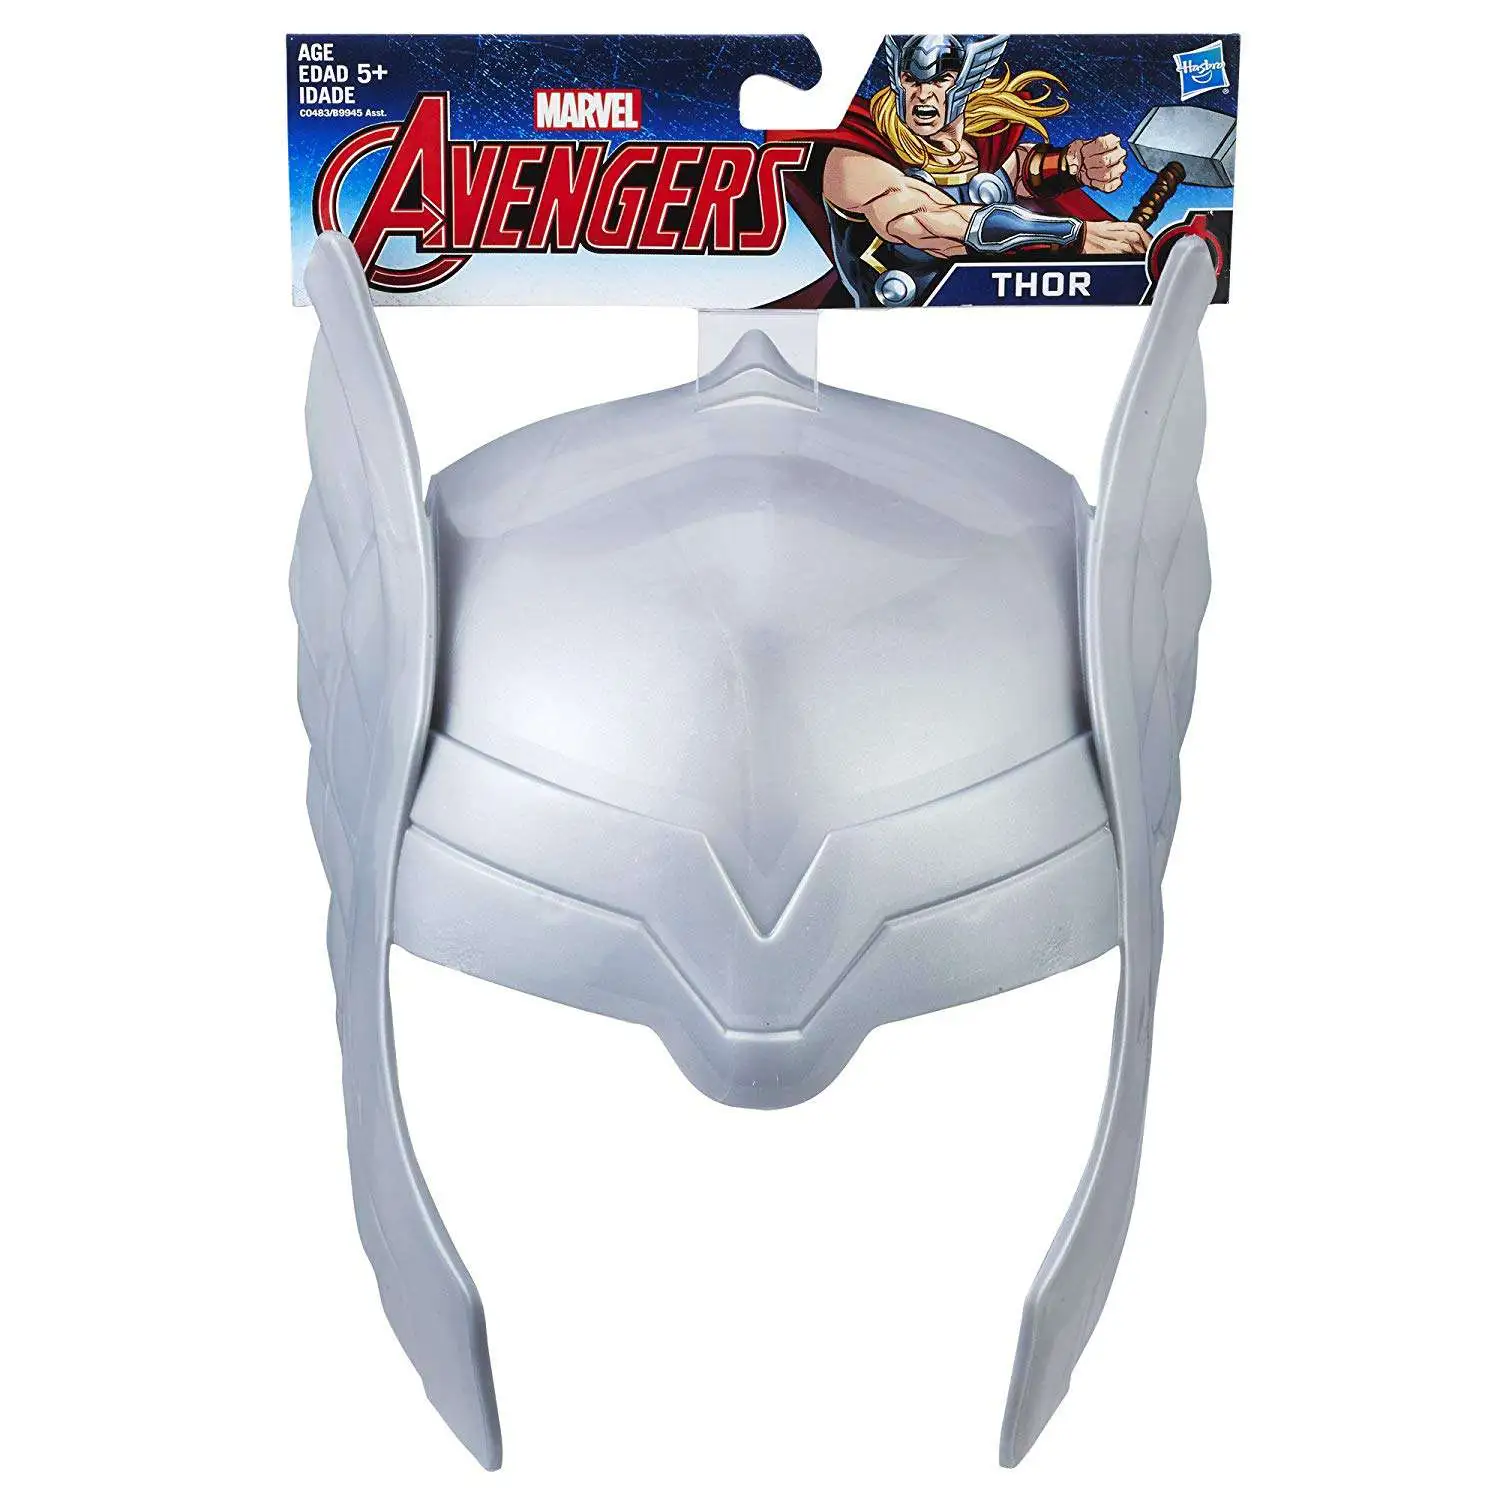 B9945EU80 Hasbro Marvel Avengers Thor Mask Classic Design Inspired by Avengers Endgame For Kids Ages 5 